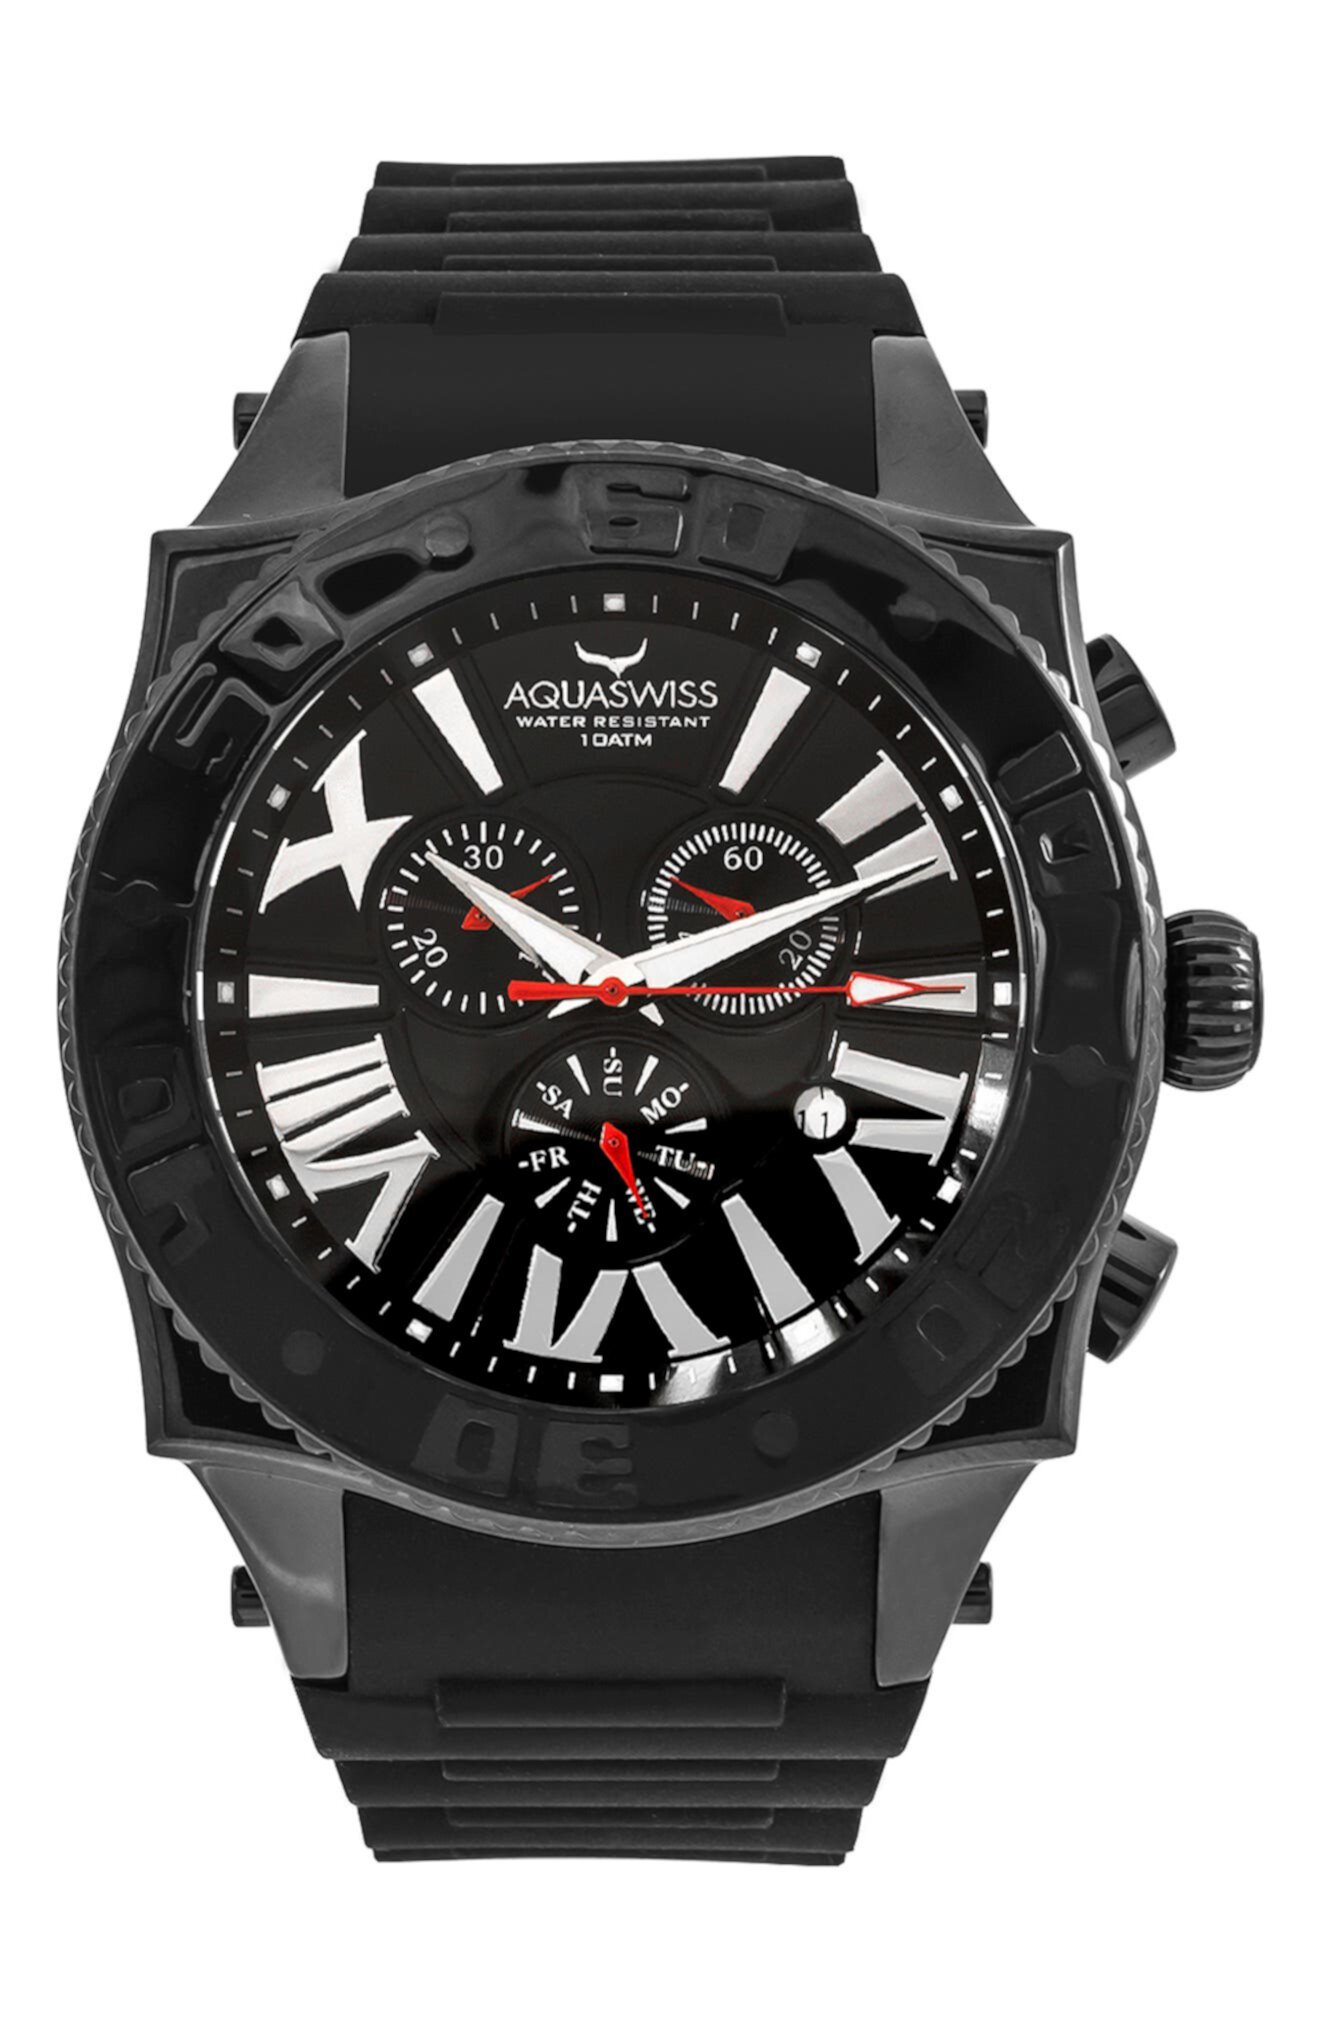 Мужские часы Swissport XG с силиконовым ремешком, 50 мм x 63 мм Aquaswiss